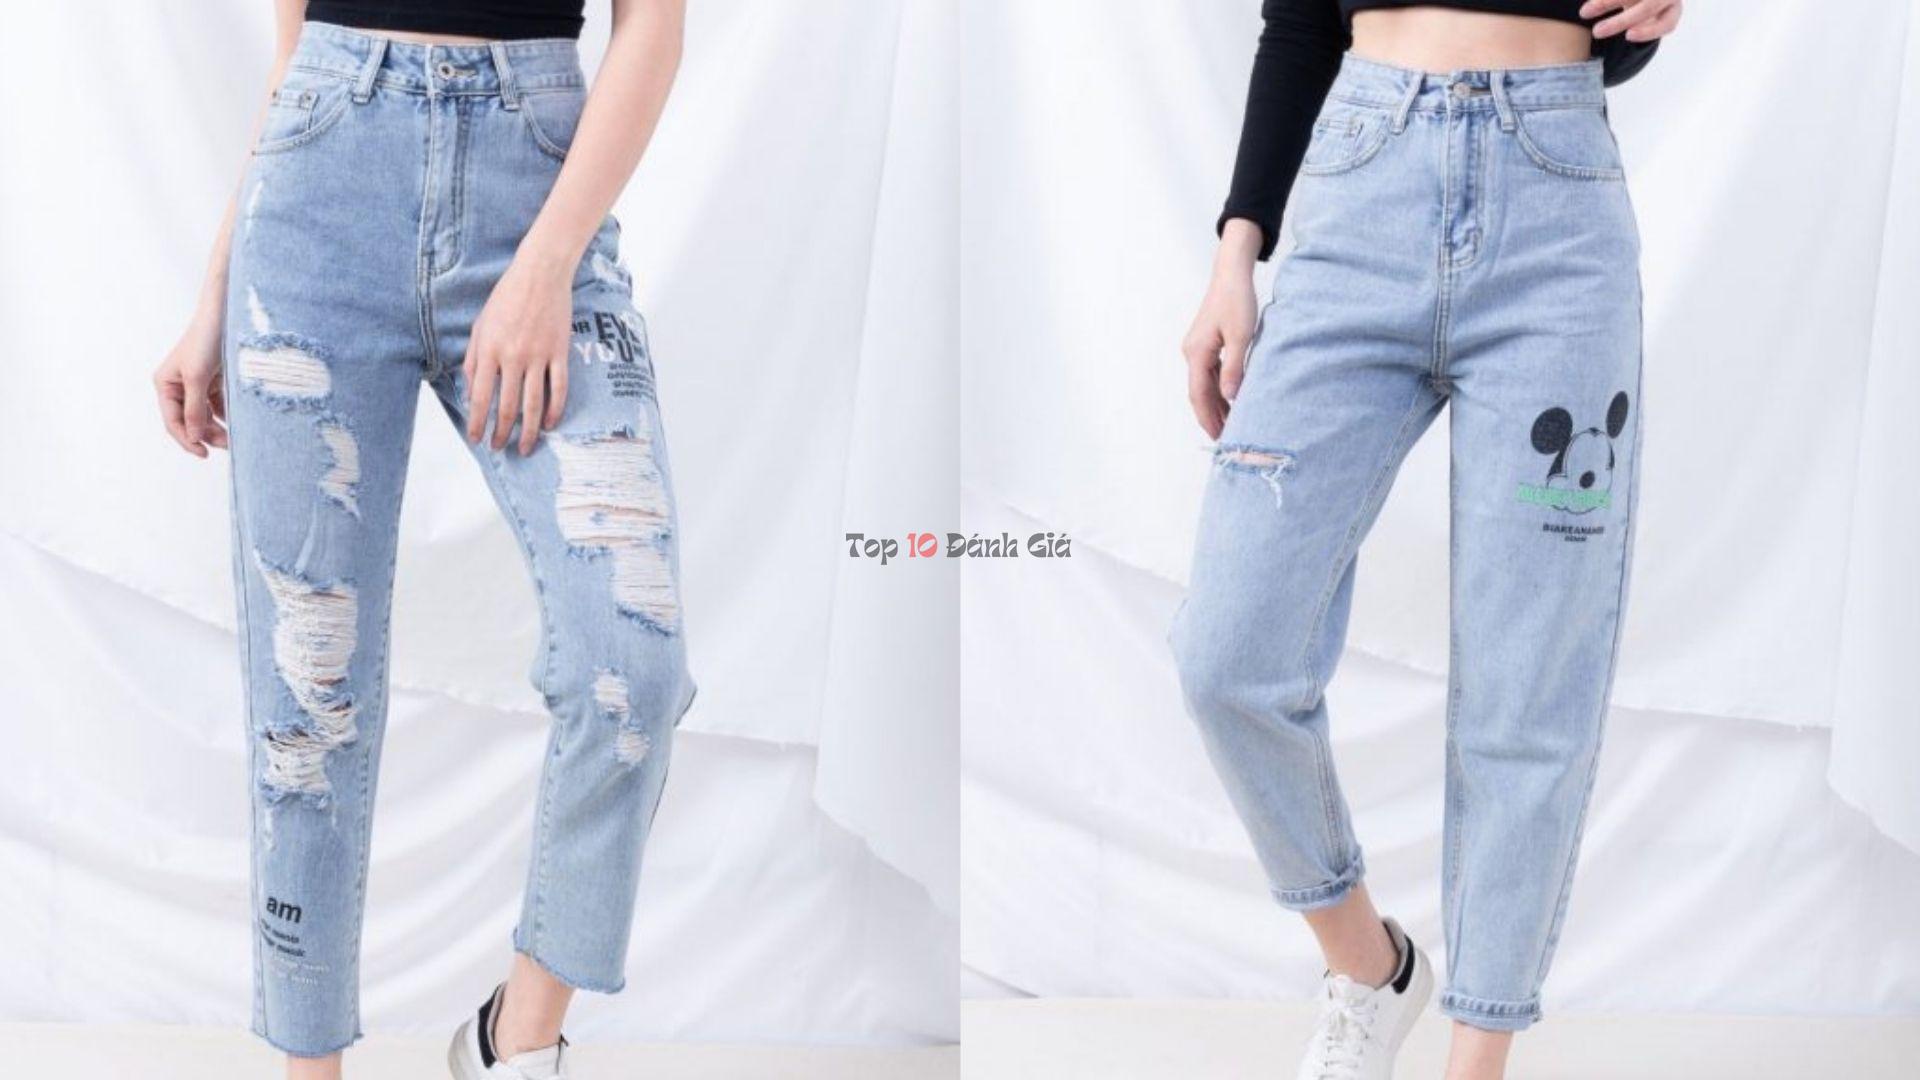 Jeany shop - shop quần jean nữ chất lượng hot nhất tại TP.HCM